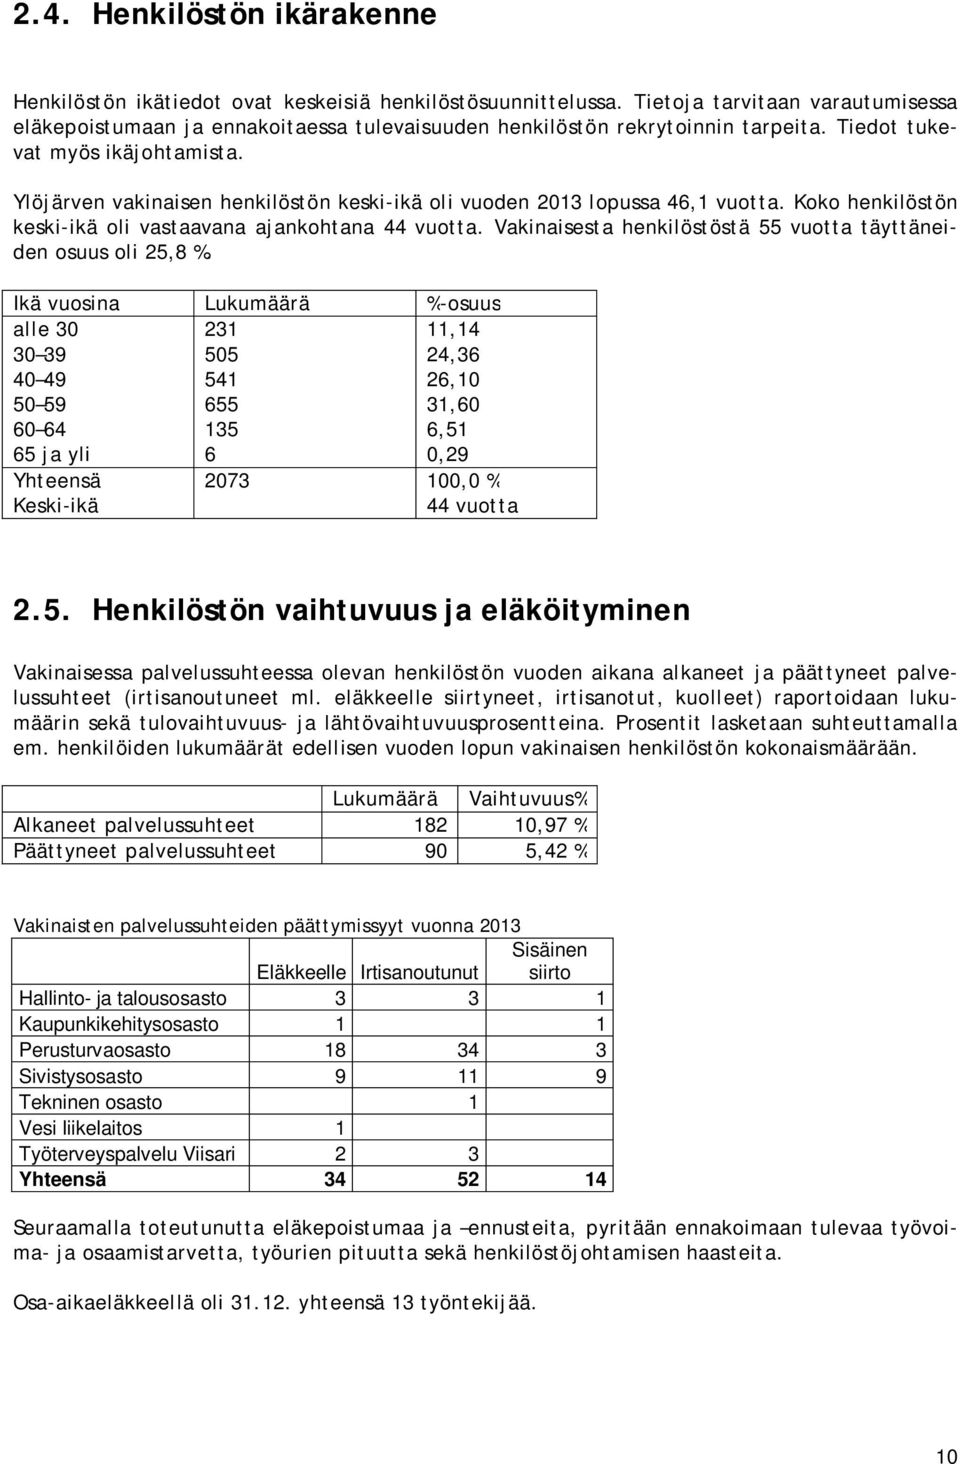 Ylöjärven vakinaisen henkilöstön keski-ikä oli vuoden 2013 lopussa 46,1 vuotta. Koko henkilöstön keski-ikä oli vastaavana ajankohtana 44 vuotta.